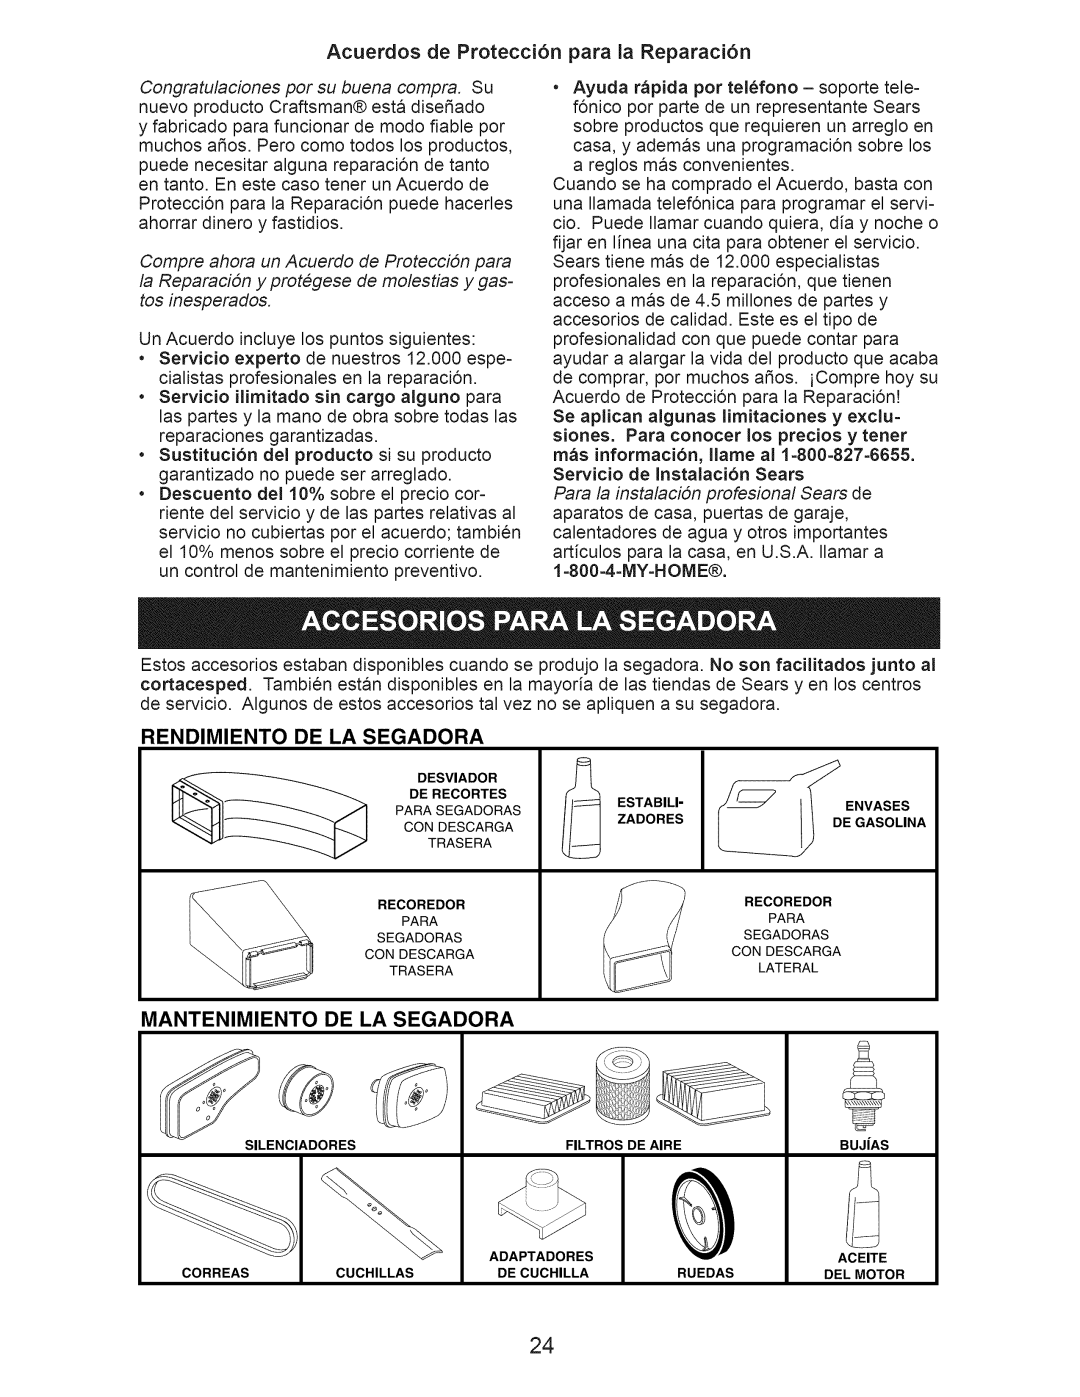 Craftsman 917.374061 Acuerdos de Protecci6n para la Reparaci6n, Rendimiento De La Segadora, Mantenimiento De La Segadora 